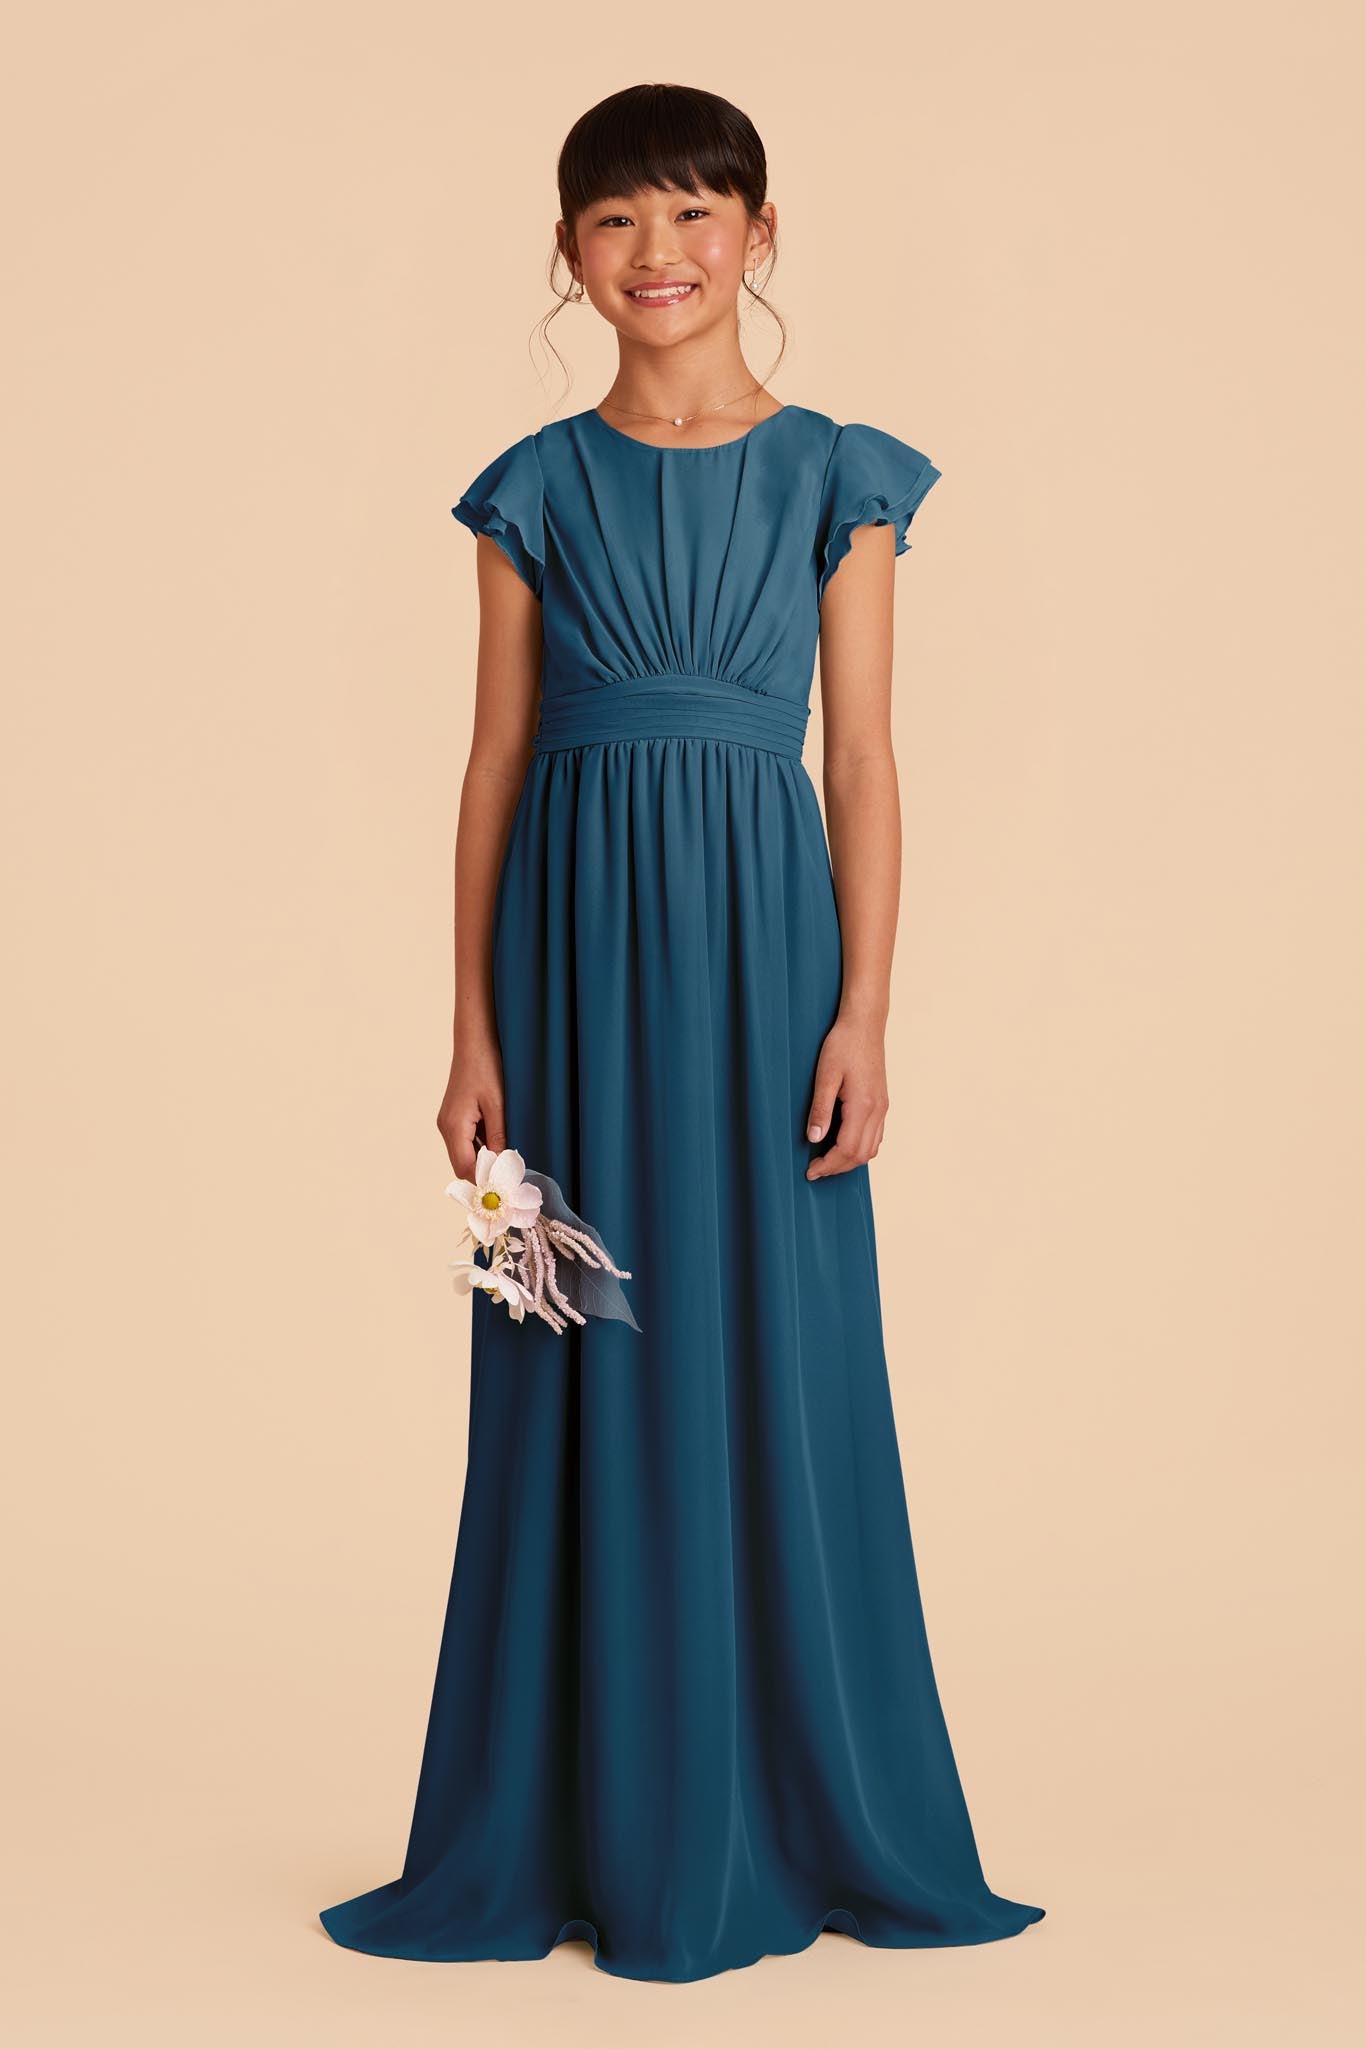 Teal Blue Dresses - Buy Teal Blue Dresses online in India